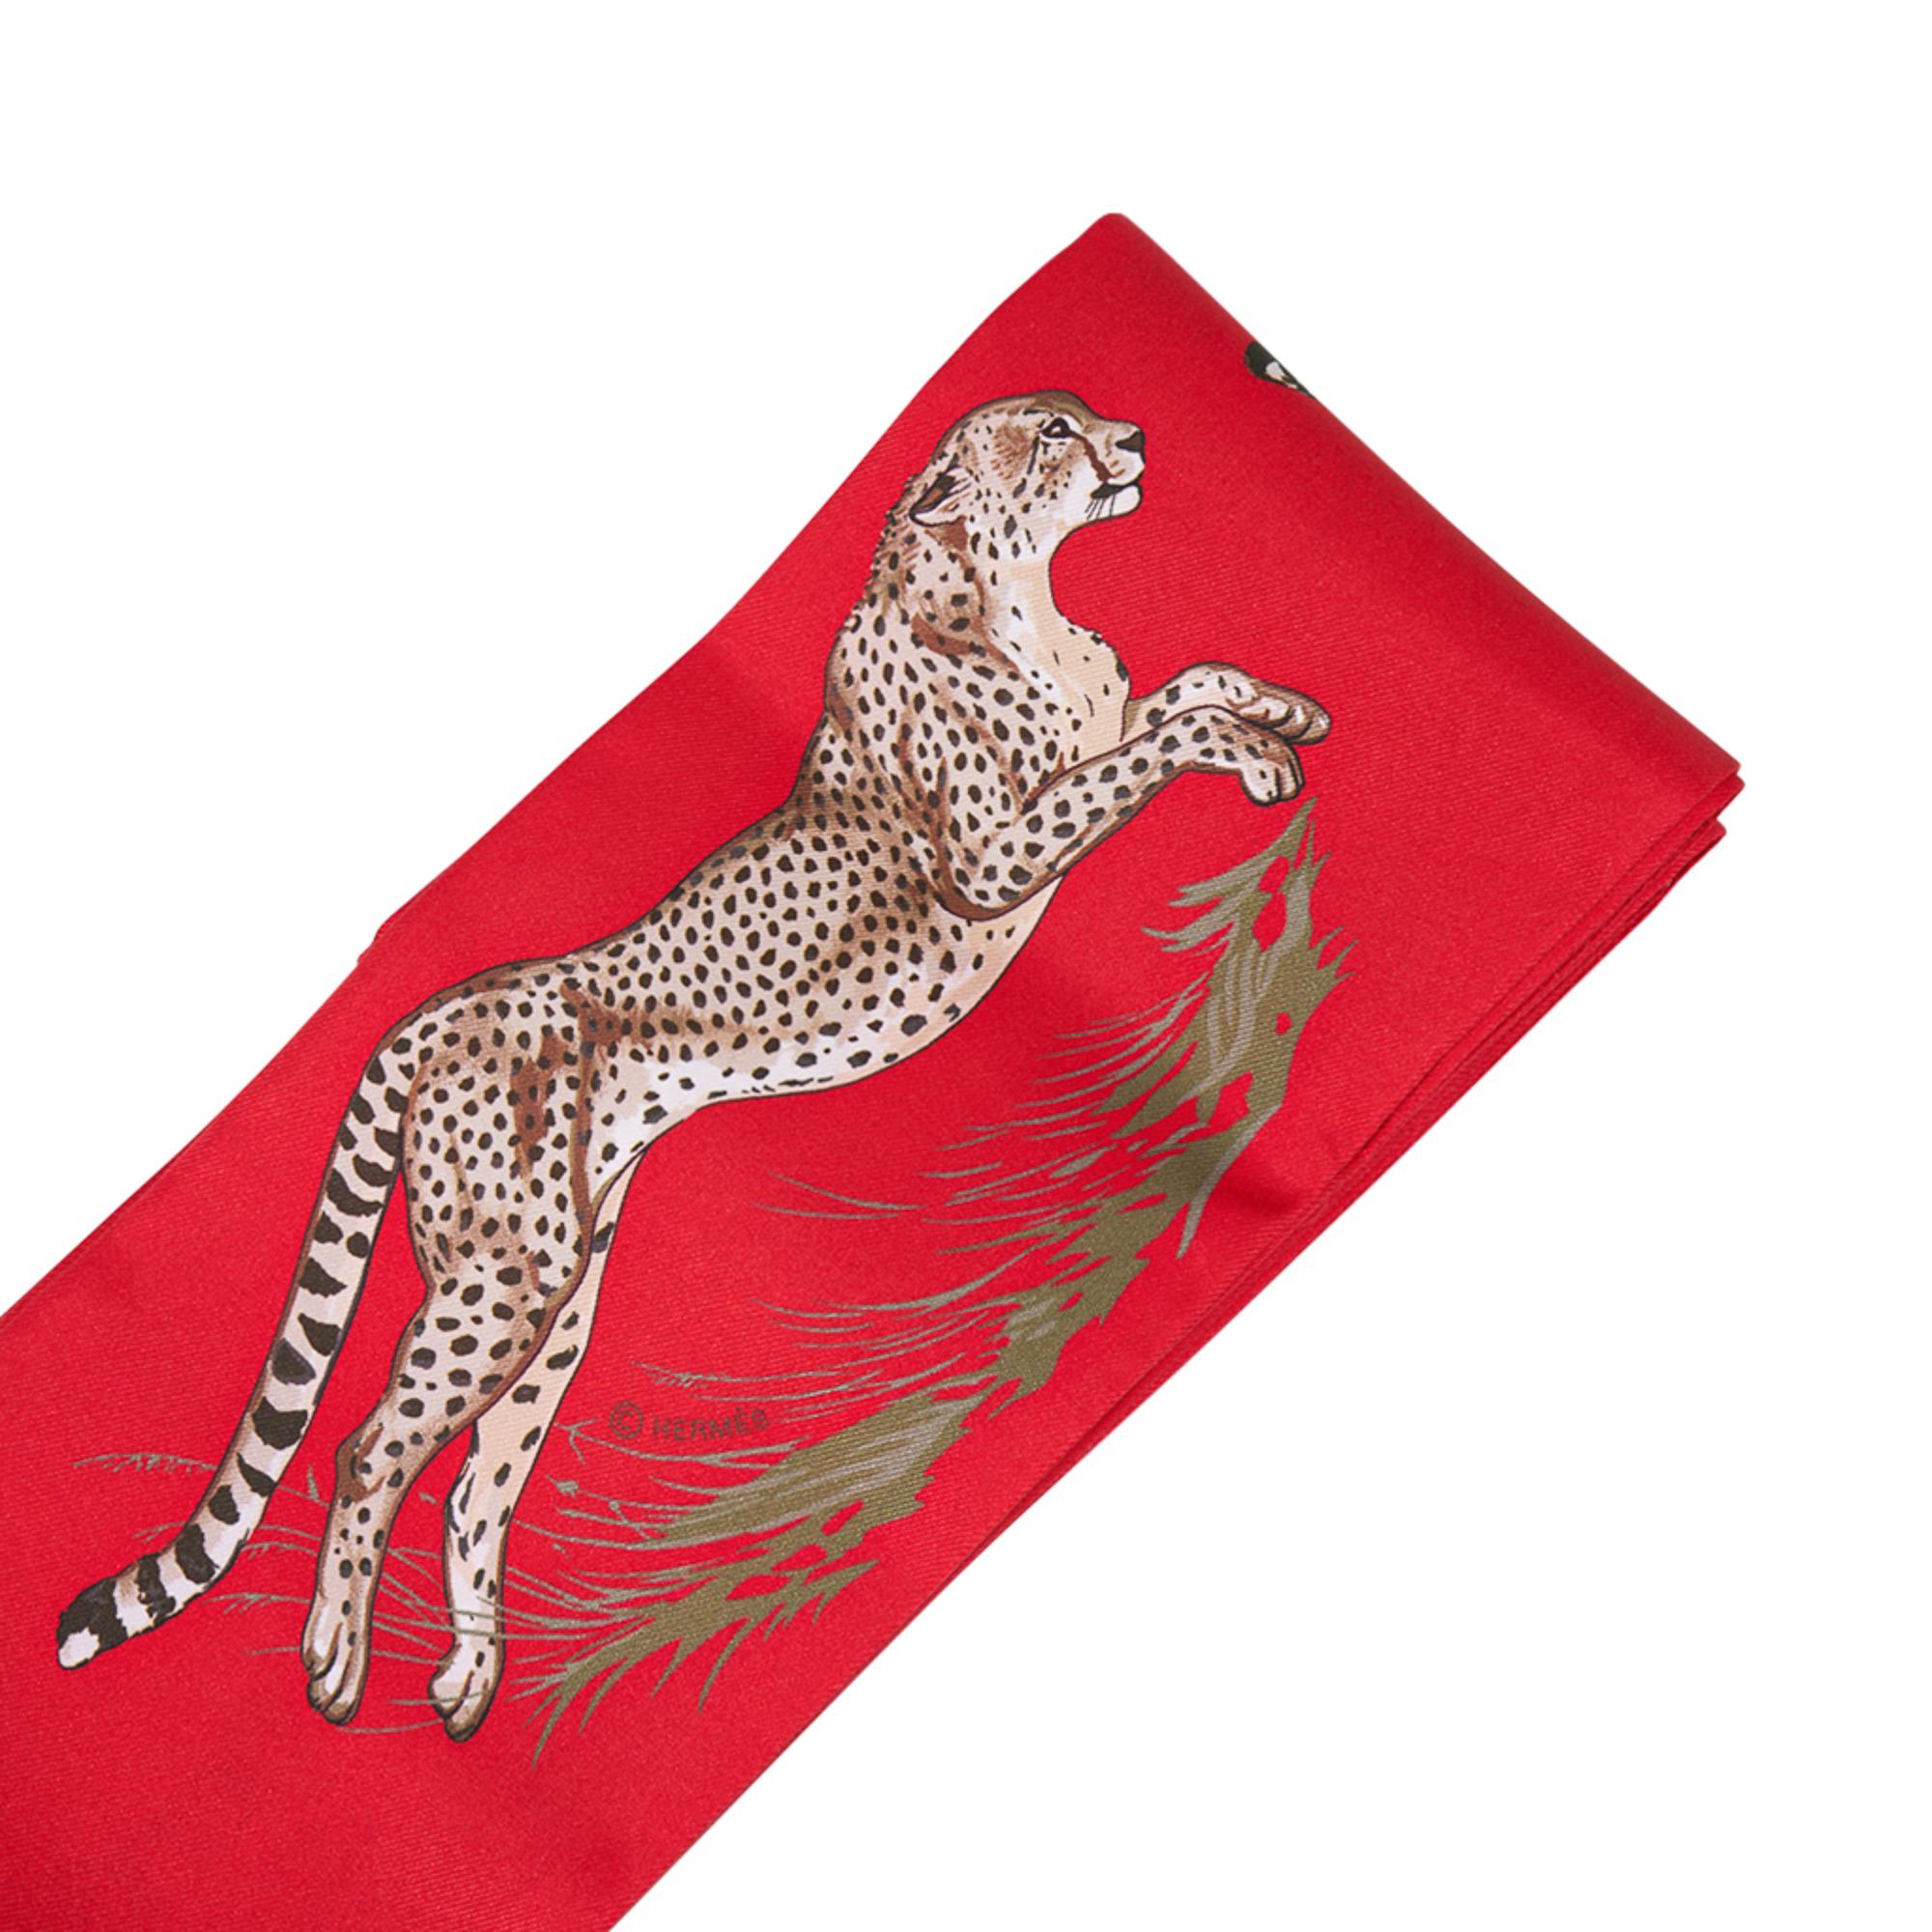 Mightychic propose un modèle Hermes Maxi - Twilly Slim Guepards en Rouge / Beige Dore / Brun.
Cet accessoire emblématique d'Hermès nouvellement adapté peut être porté de multiples façons pour ajouter une touche ludique à votre garde-robe.
Se porte